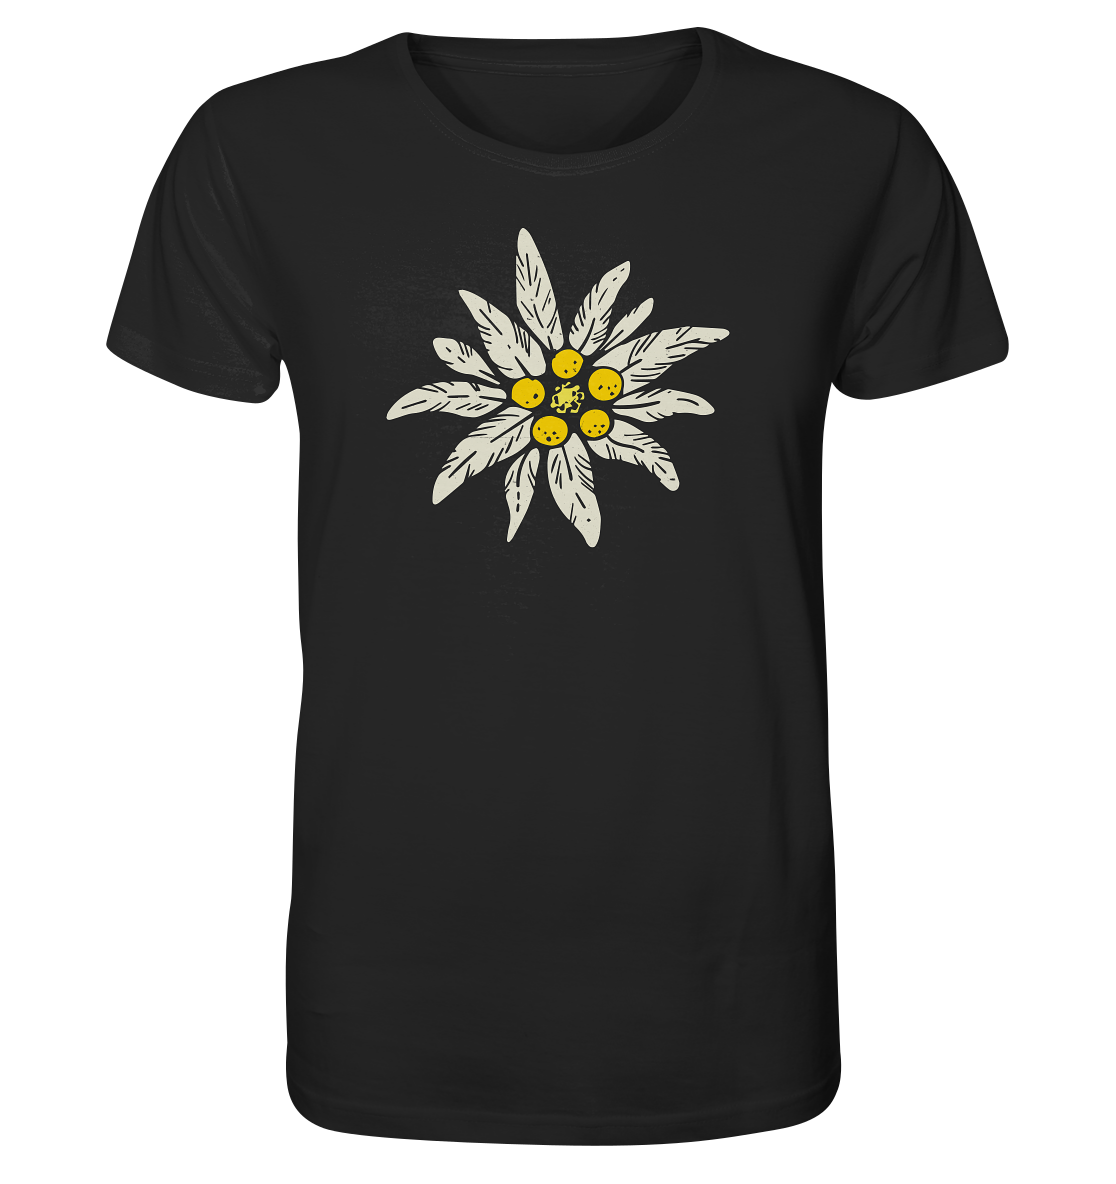 Stella alpina - Organic Shirt